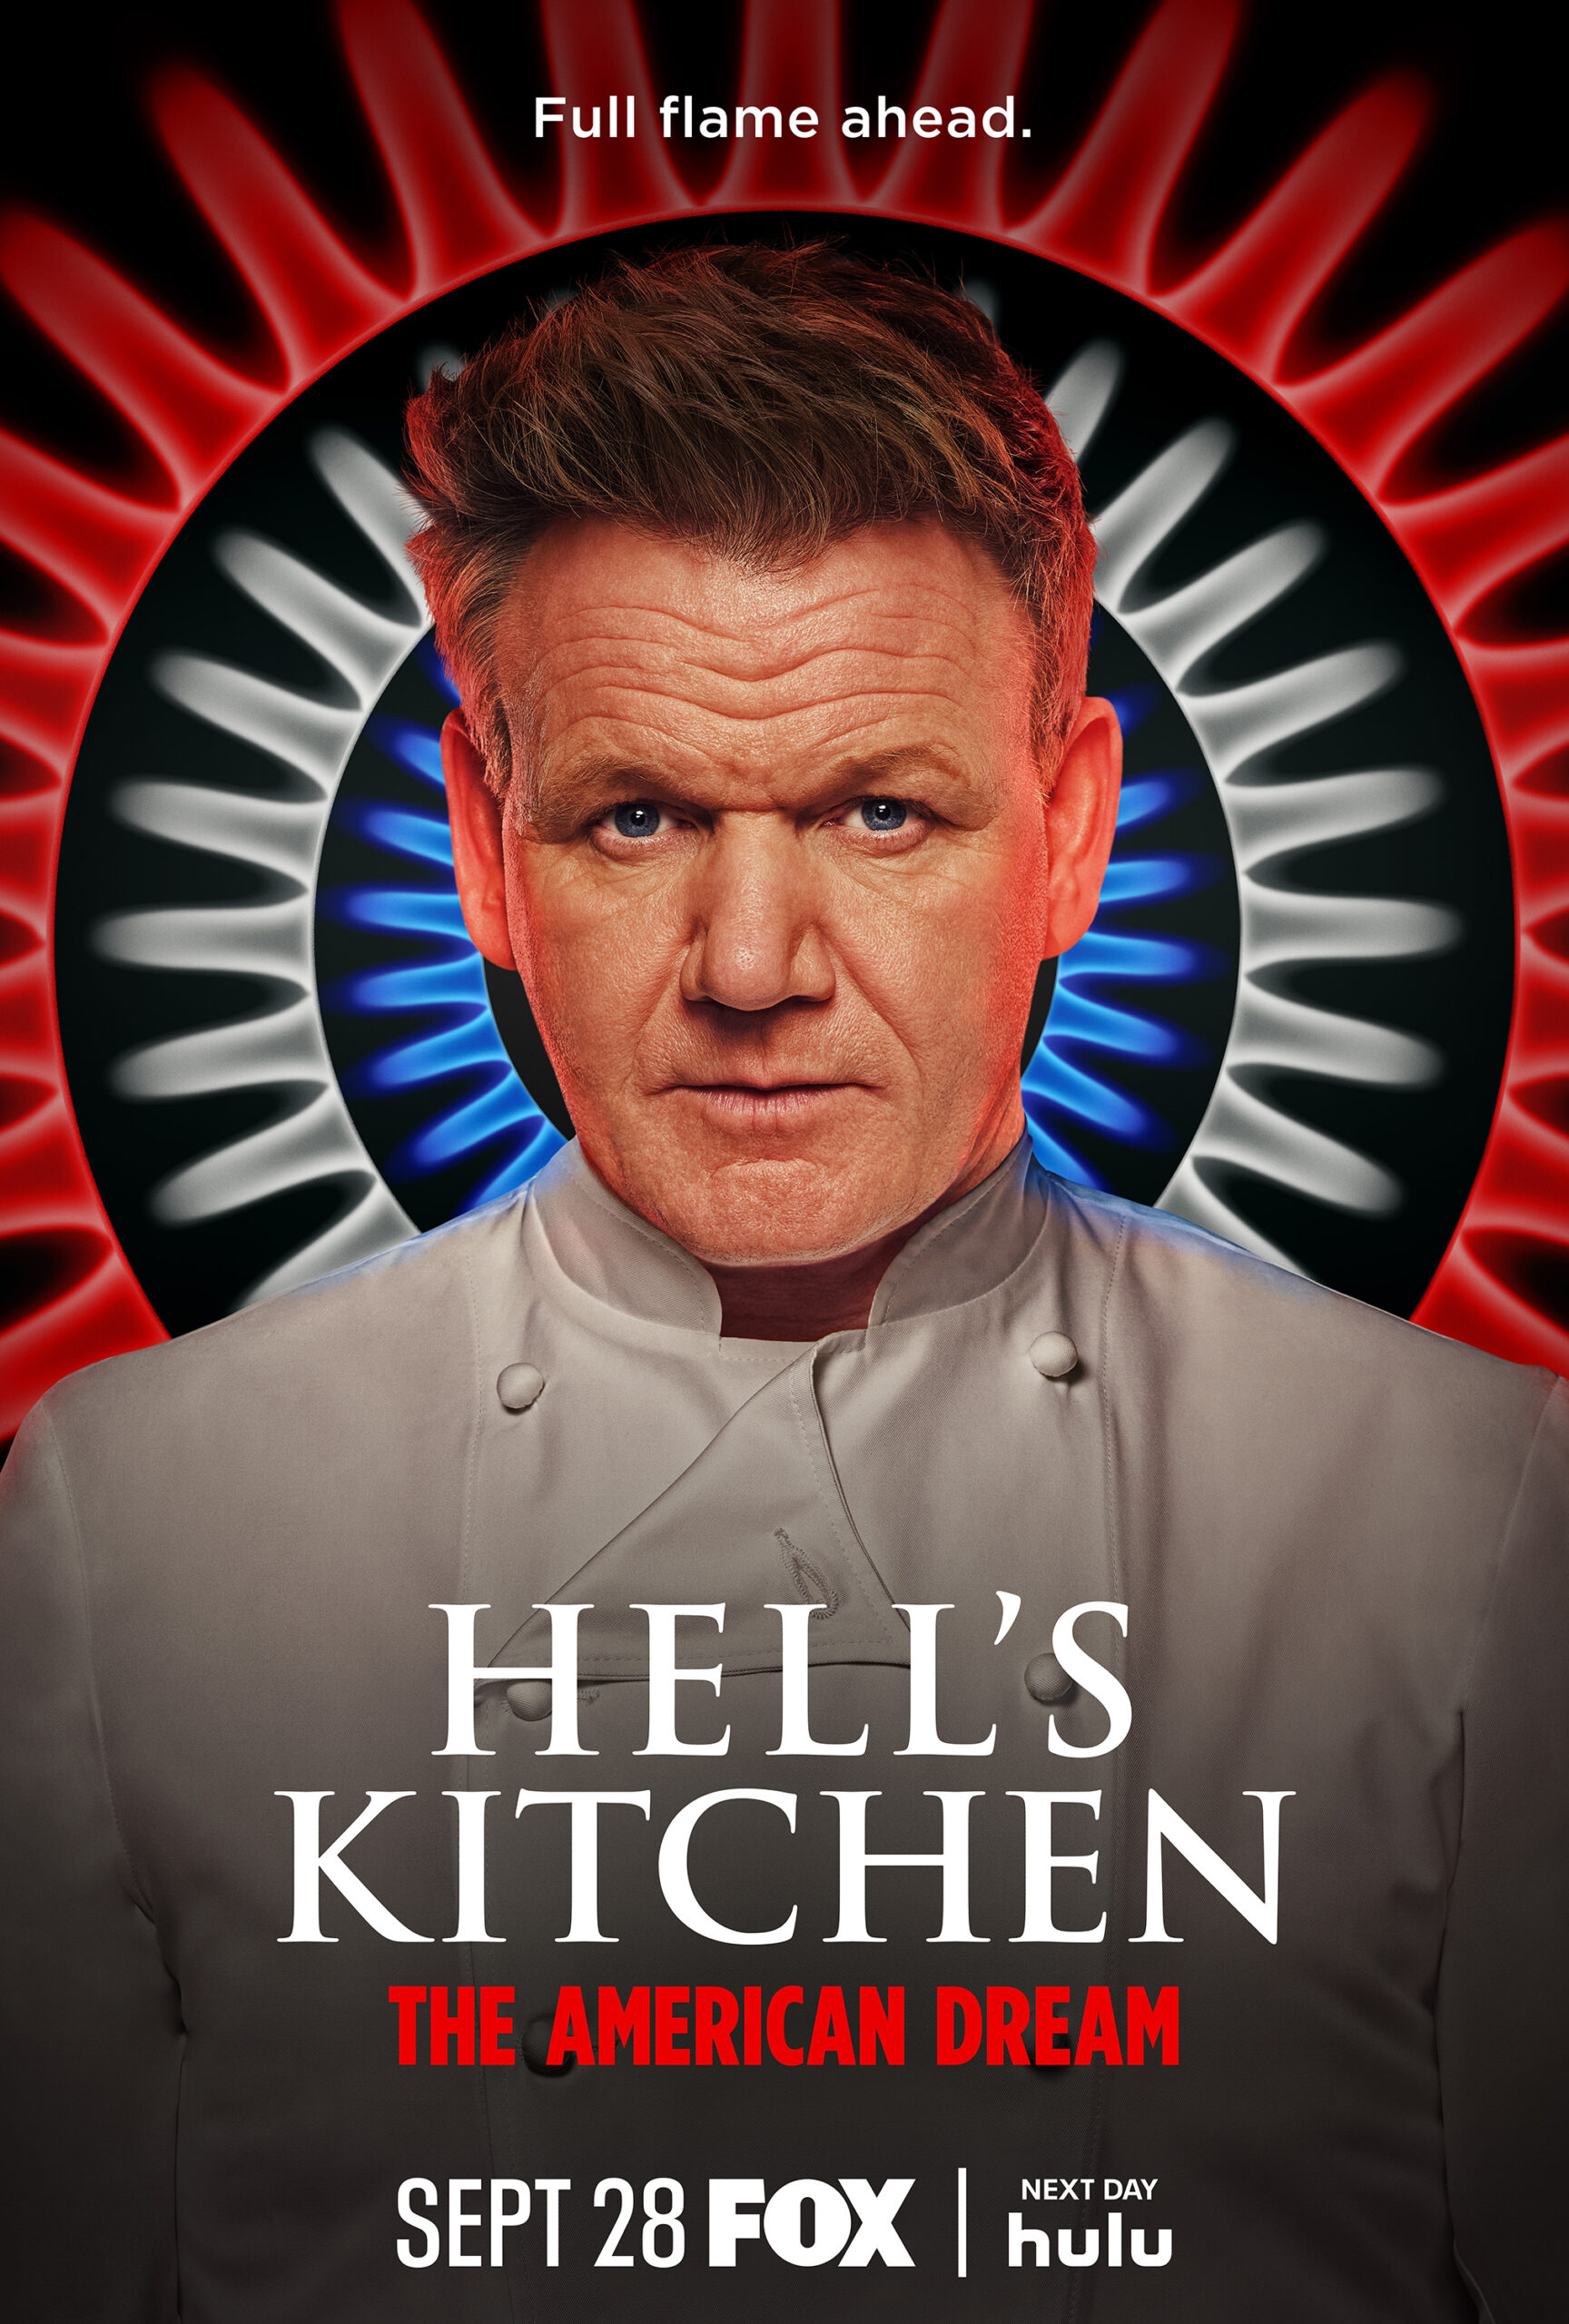 Hell's Kitchen Sneak Peek